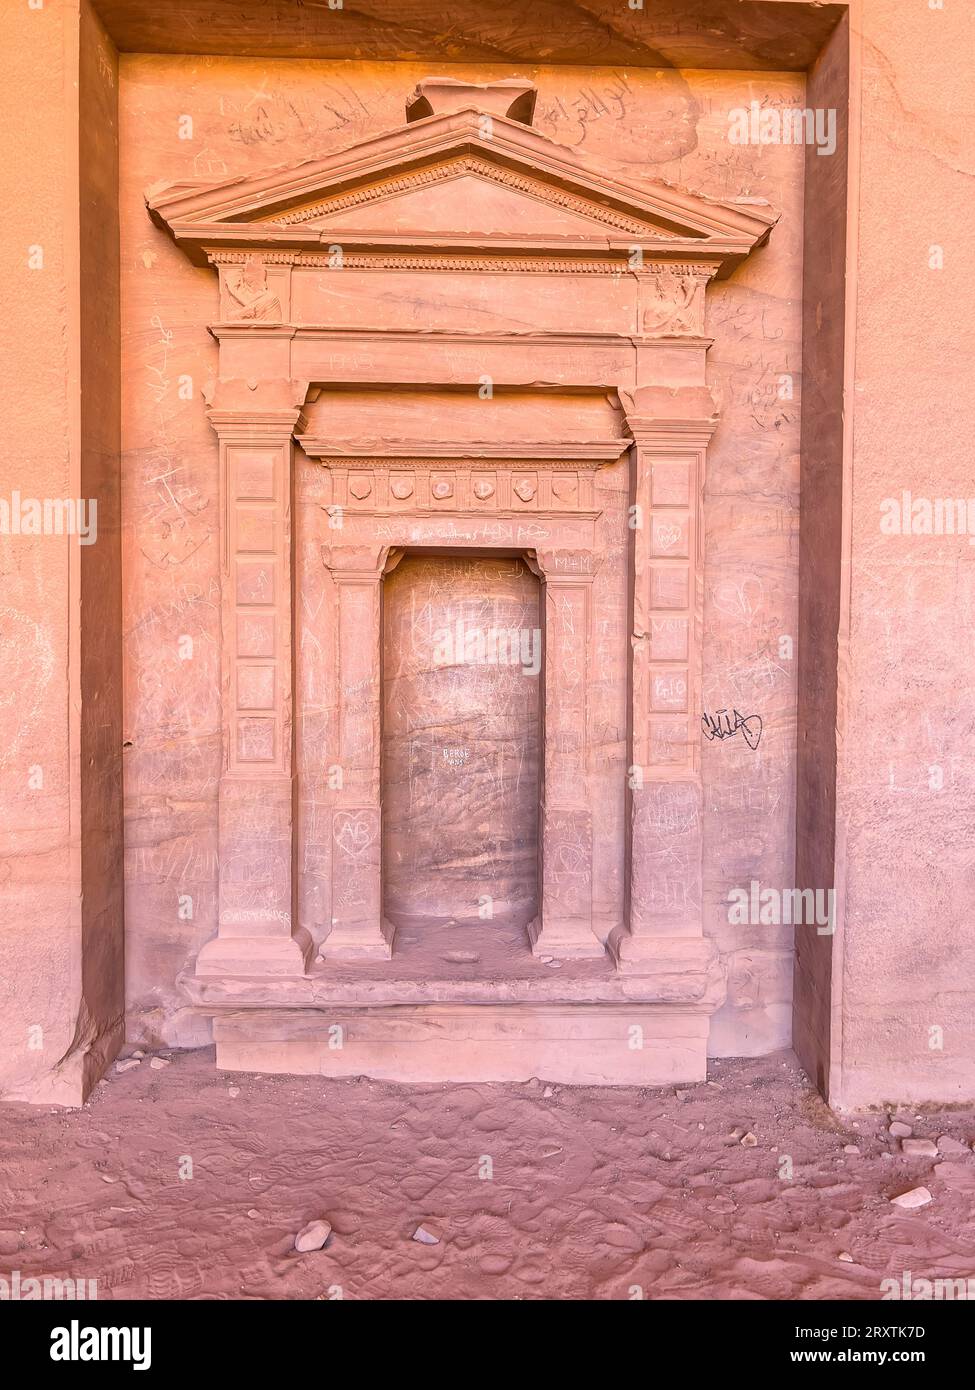 Geschnitzte Tür, archäologischer Park Petra, UNESCO-Weltkulturerbe, eines der Neuen Sieben Weltwunder, Petra, Jordanien, Naher Osten Stockfoto